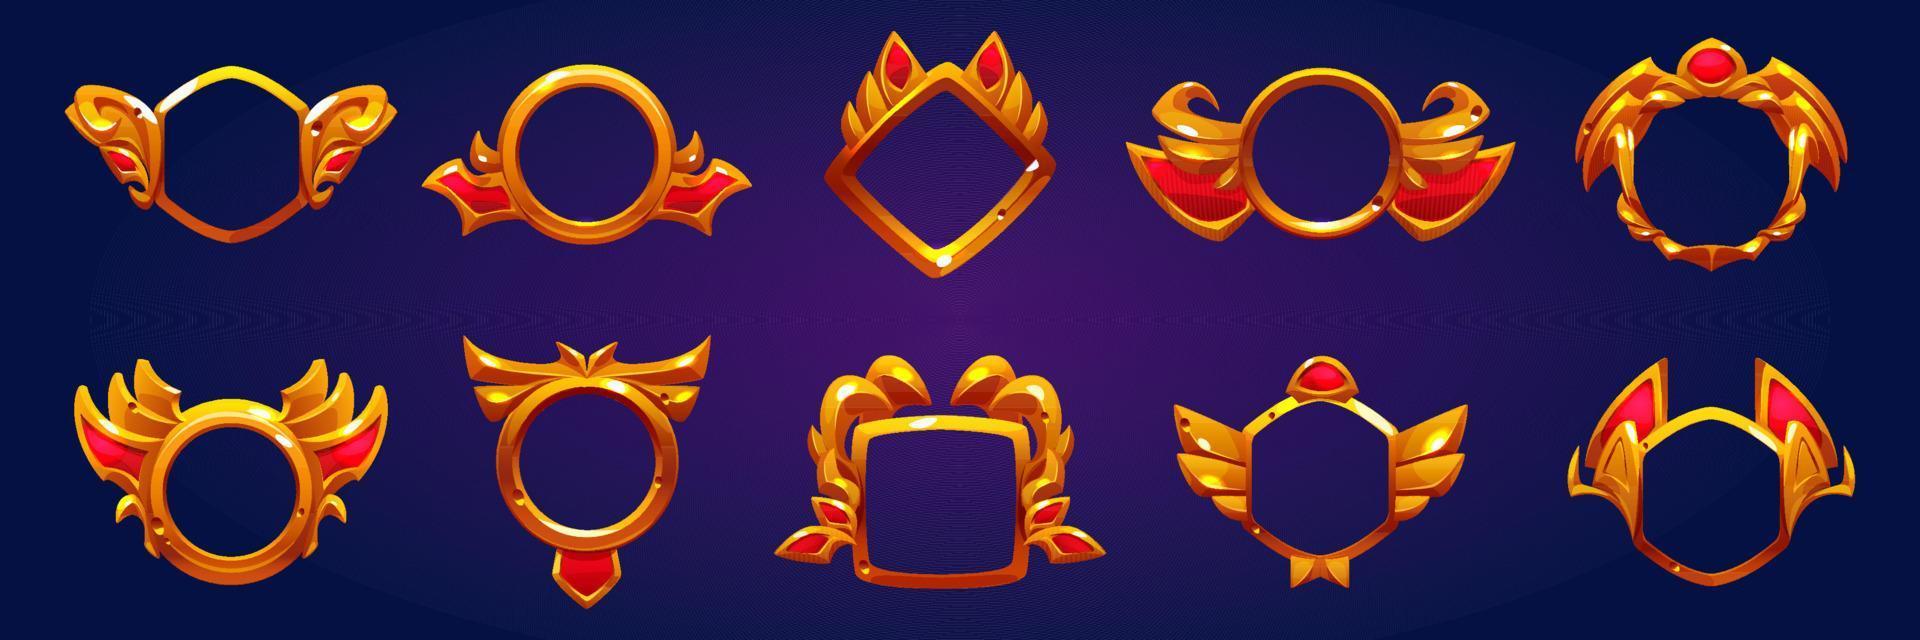 insignias de premio dorado, marcos de avatar de juego vector